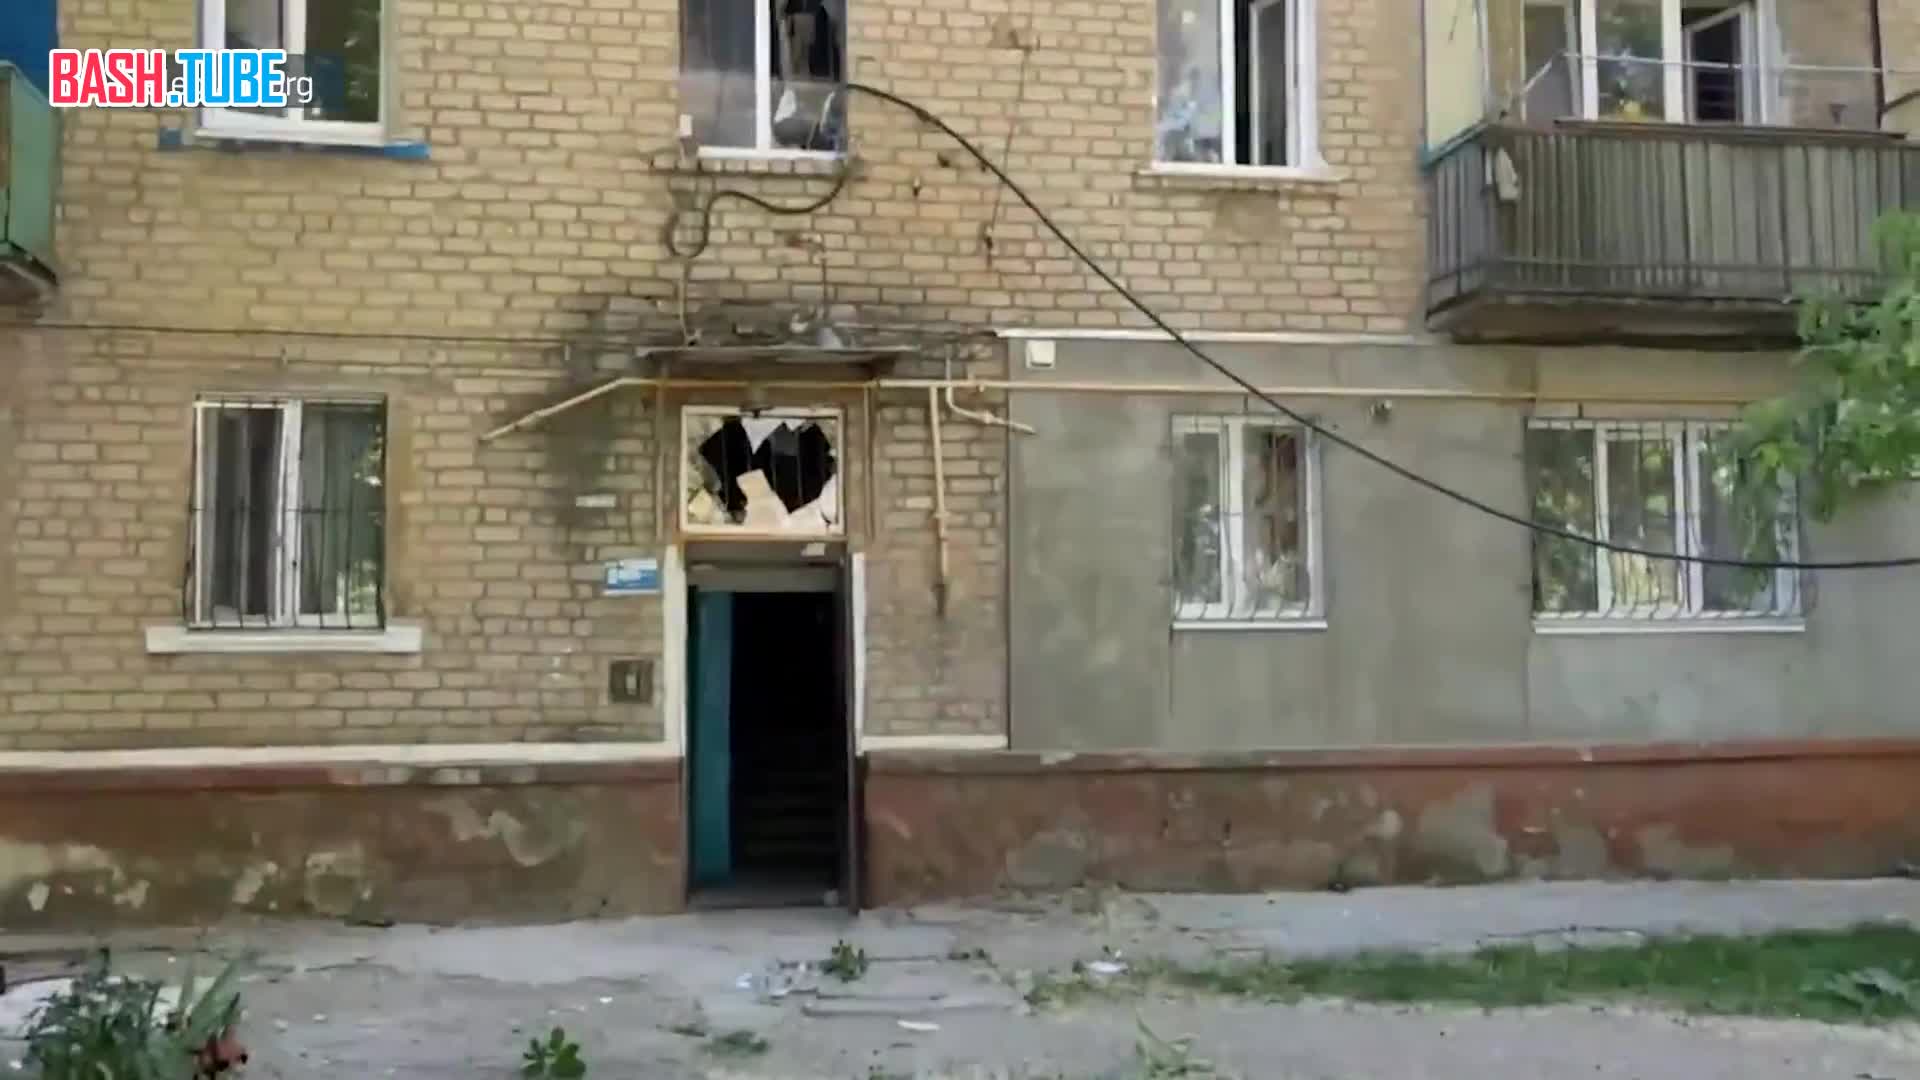  ВСУ обстреляли жилые кварталы города Луганска крылатыми ракетами SCALP/Storm Shadow. От удара в многоэтажках выбило стекла